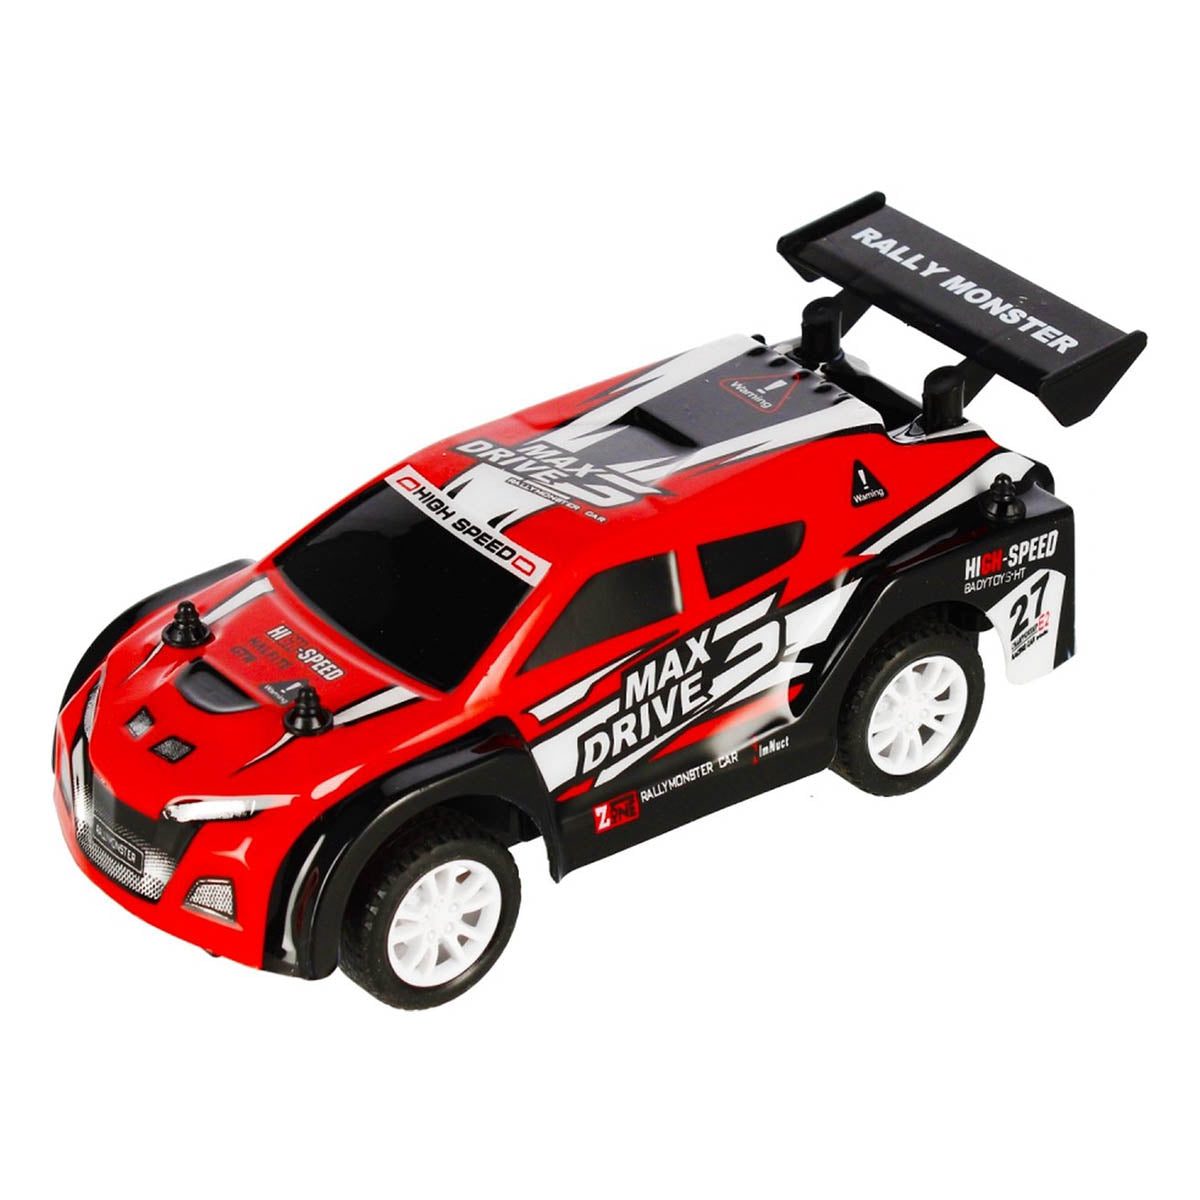 Ariko RC-Rallyeautos – zwei RC-Autos mit Fernsteuerung – inklusive 8 x Philips AA-Batterien